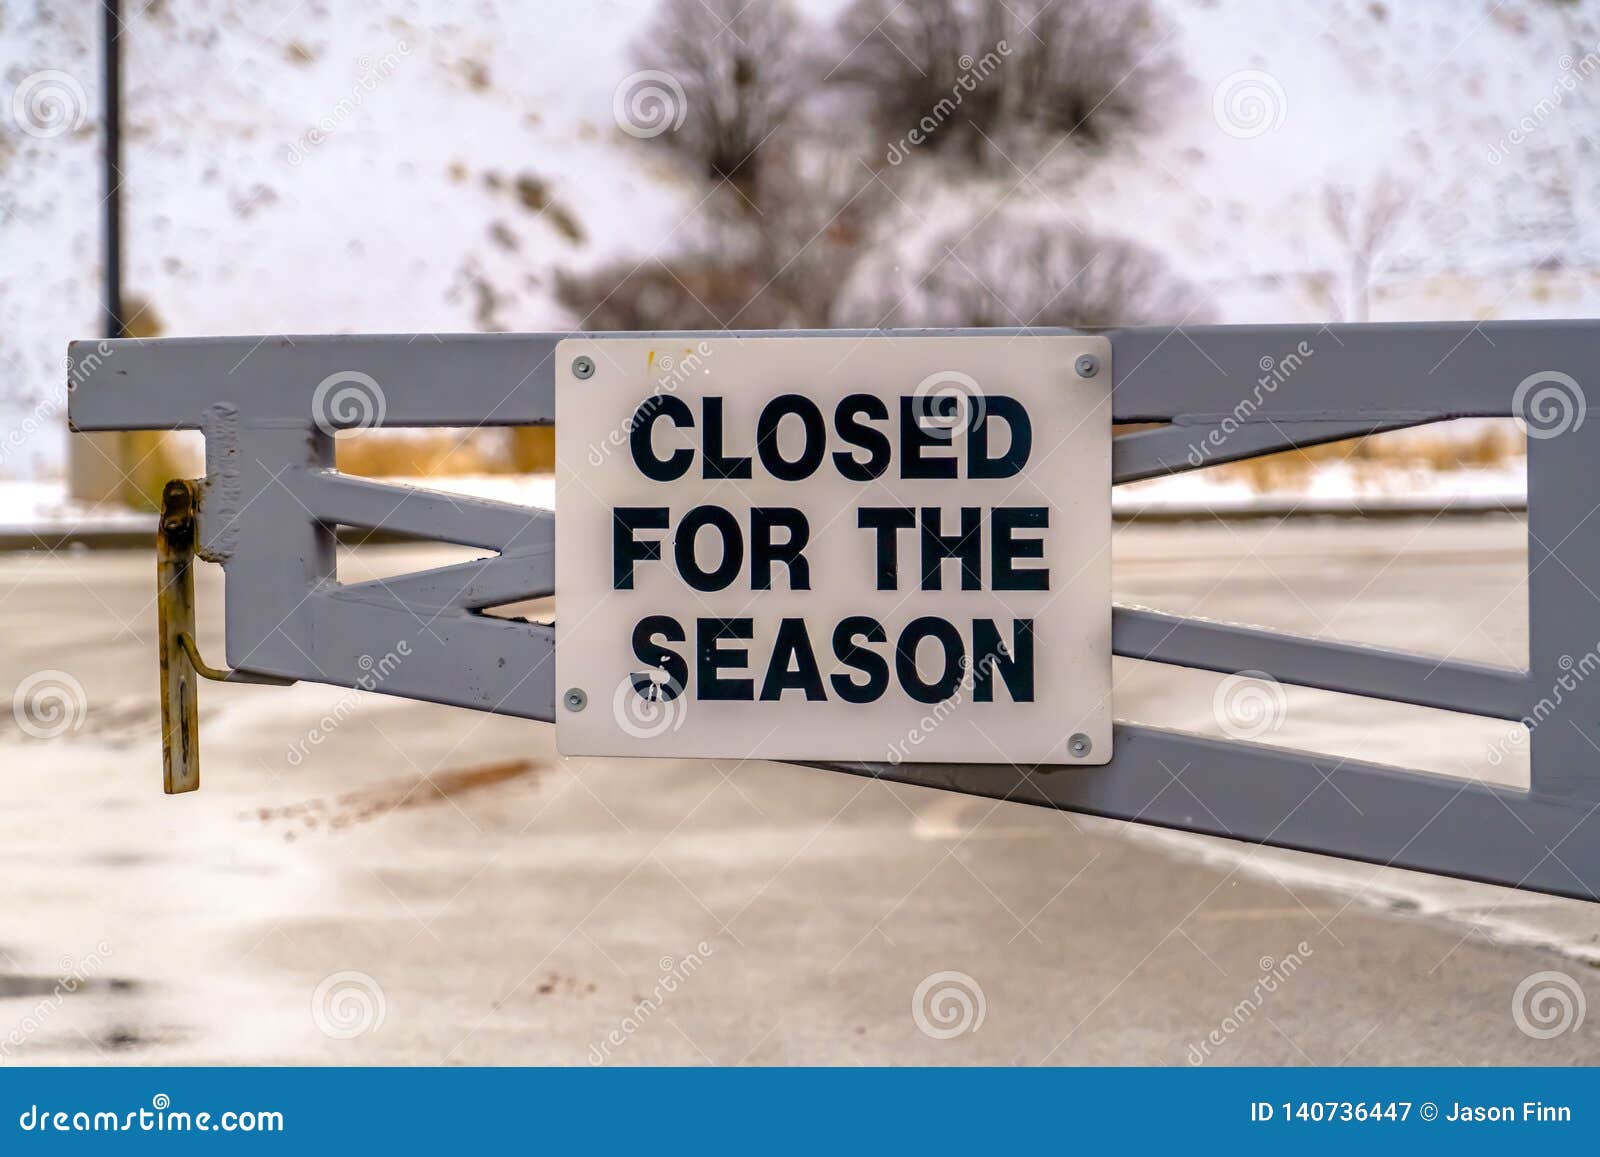 closed-season-sign-gate-closed-season-sign-gate-close-up-view-closed-season-sign-metal-140736447.jpg